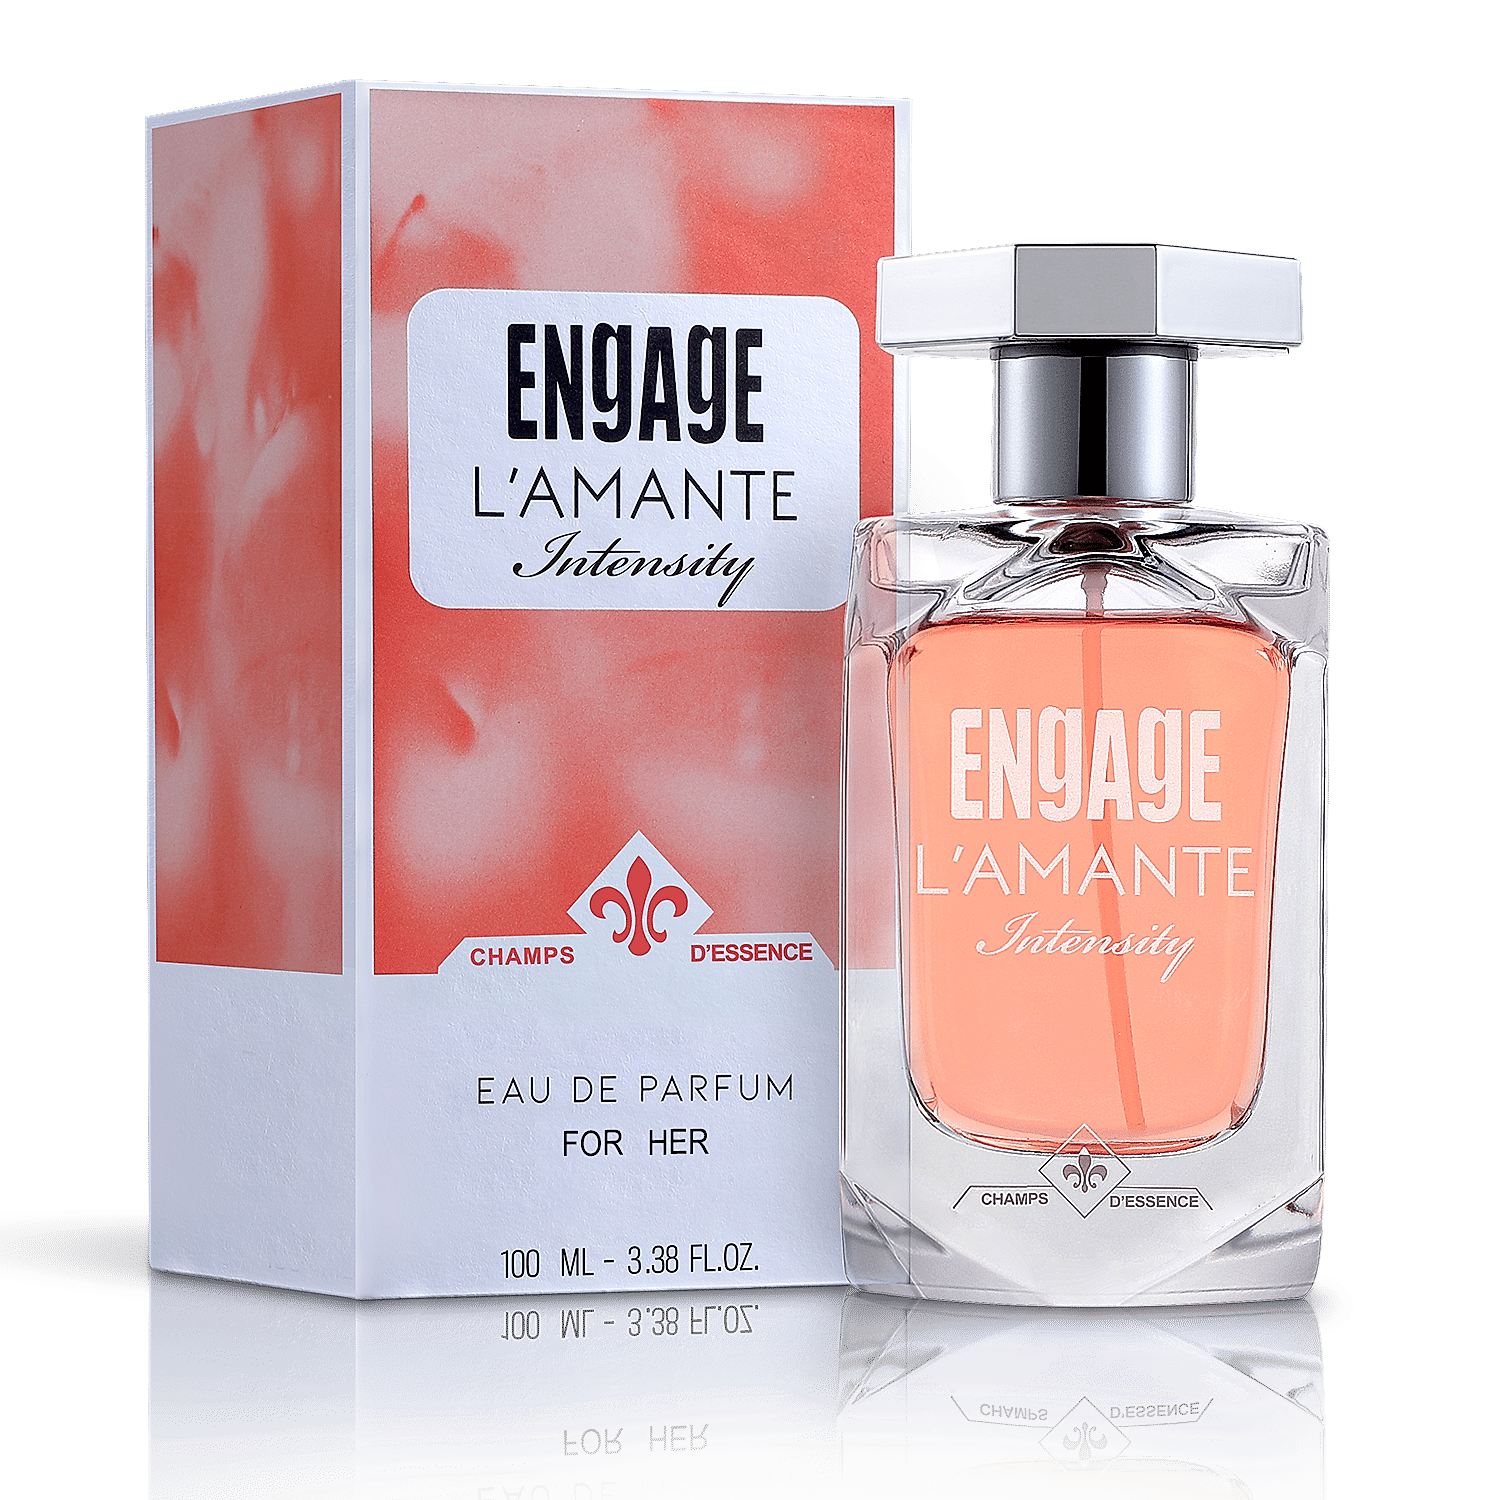 Engage L'amante Intensity Eau De Parfum For Women - 100mL